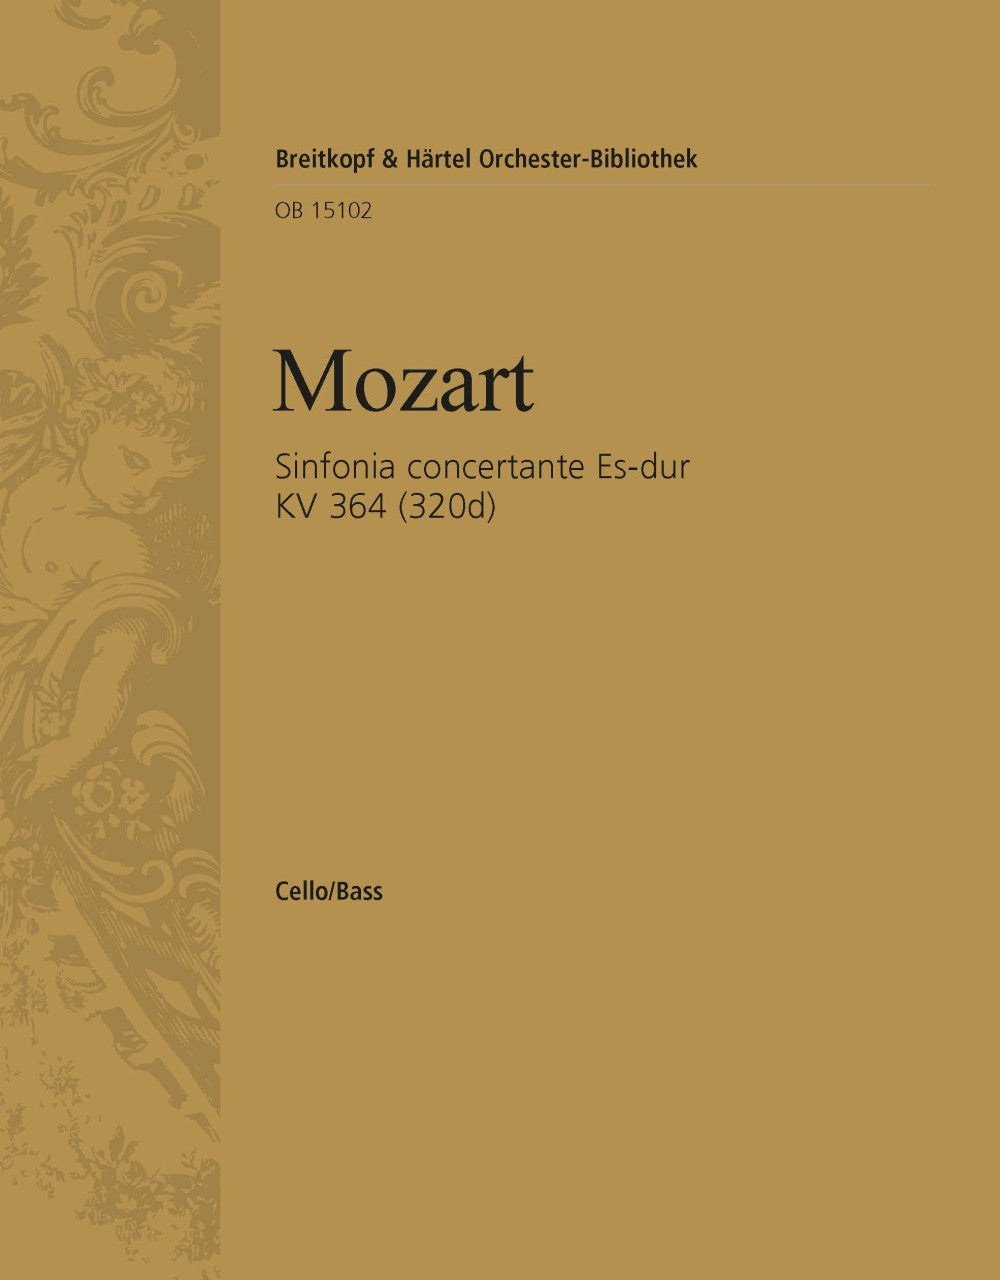 Mozart: Sinfonia Concertante, K. 364 (320d) - Ficks Music